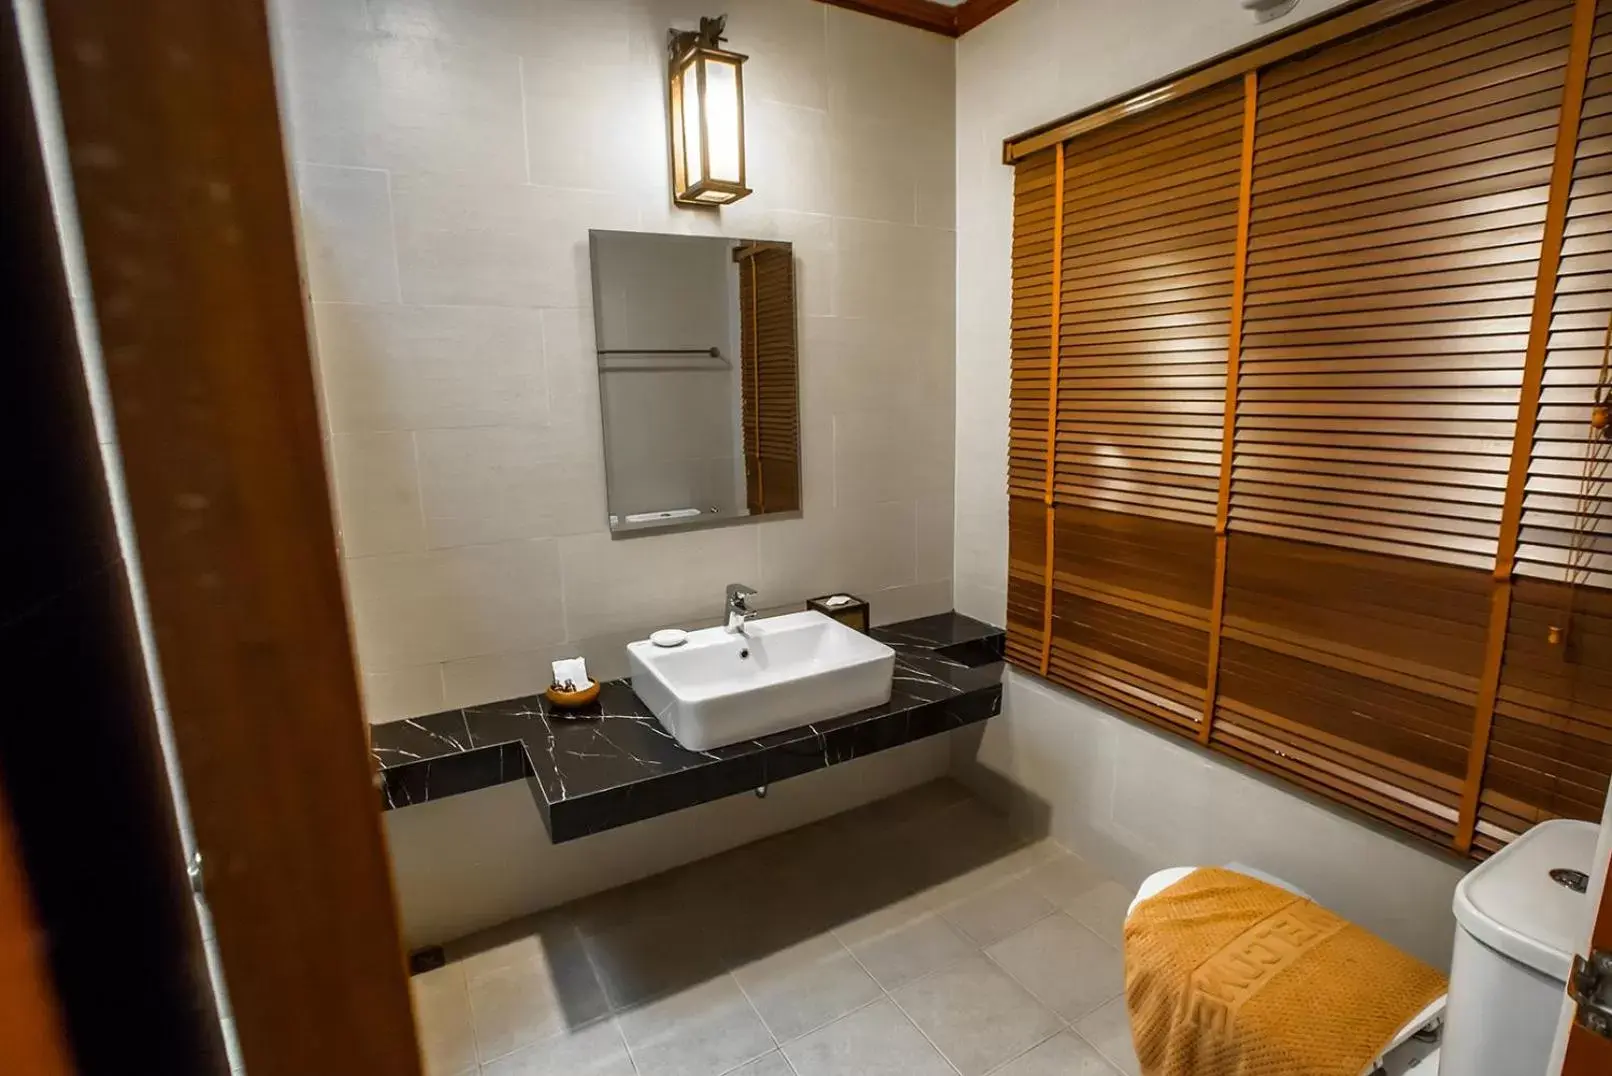 Bathroom in Salakphet Resort